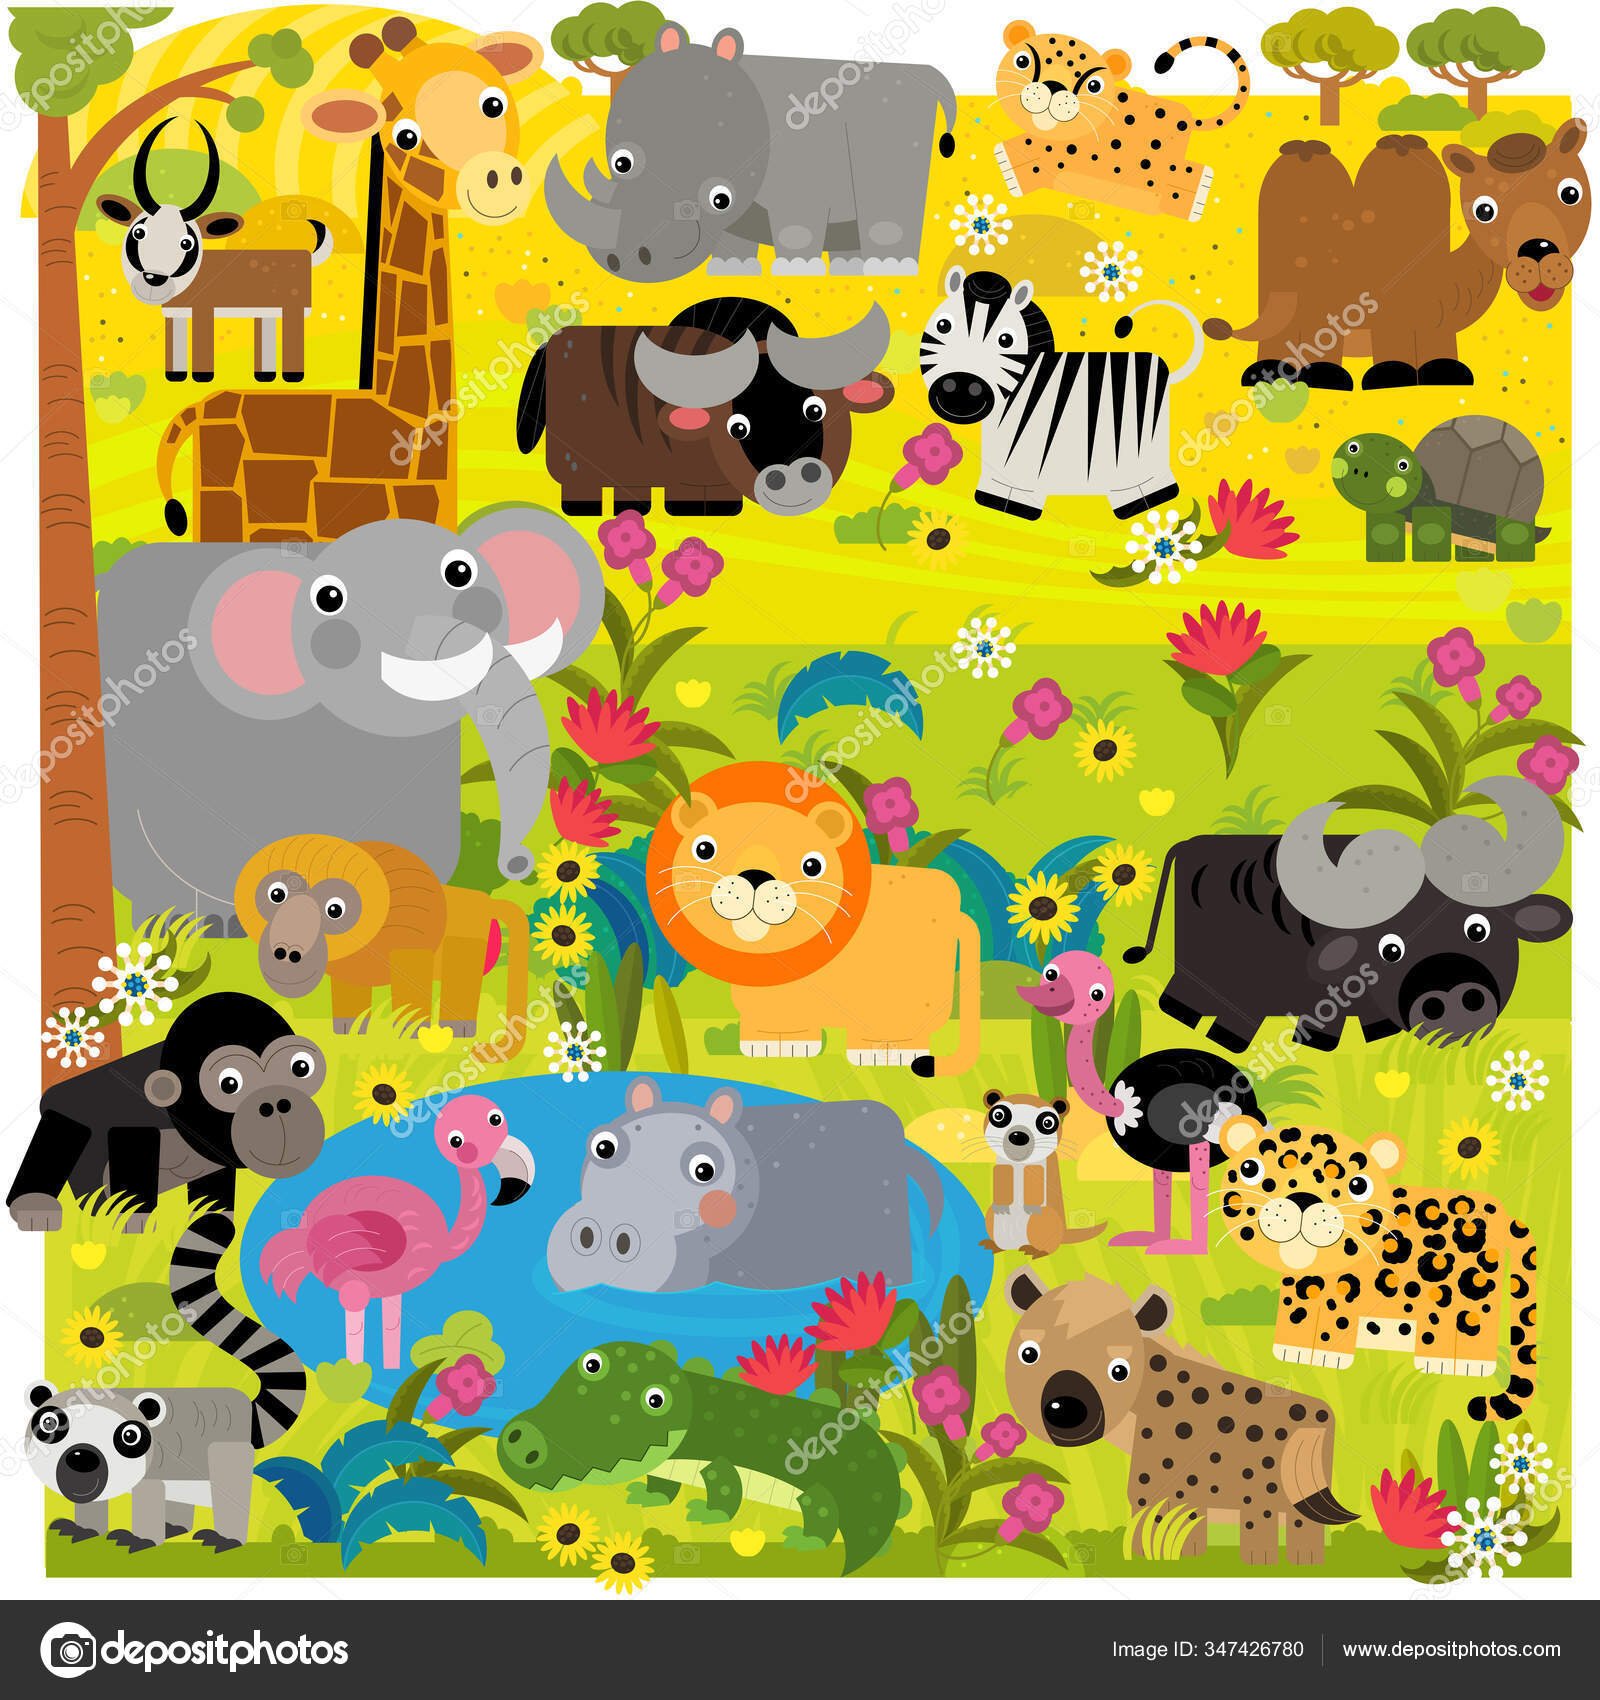 Zoo cartoon Stock Photos, Royalty Free Zoo cartoon Images | Depositphotos